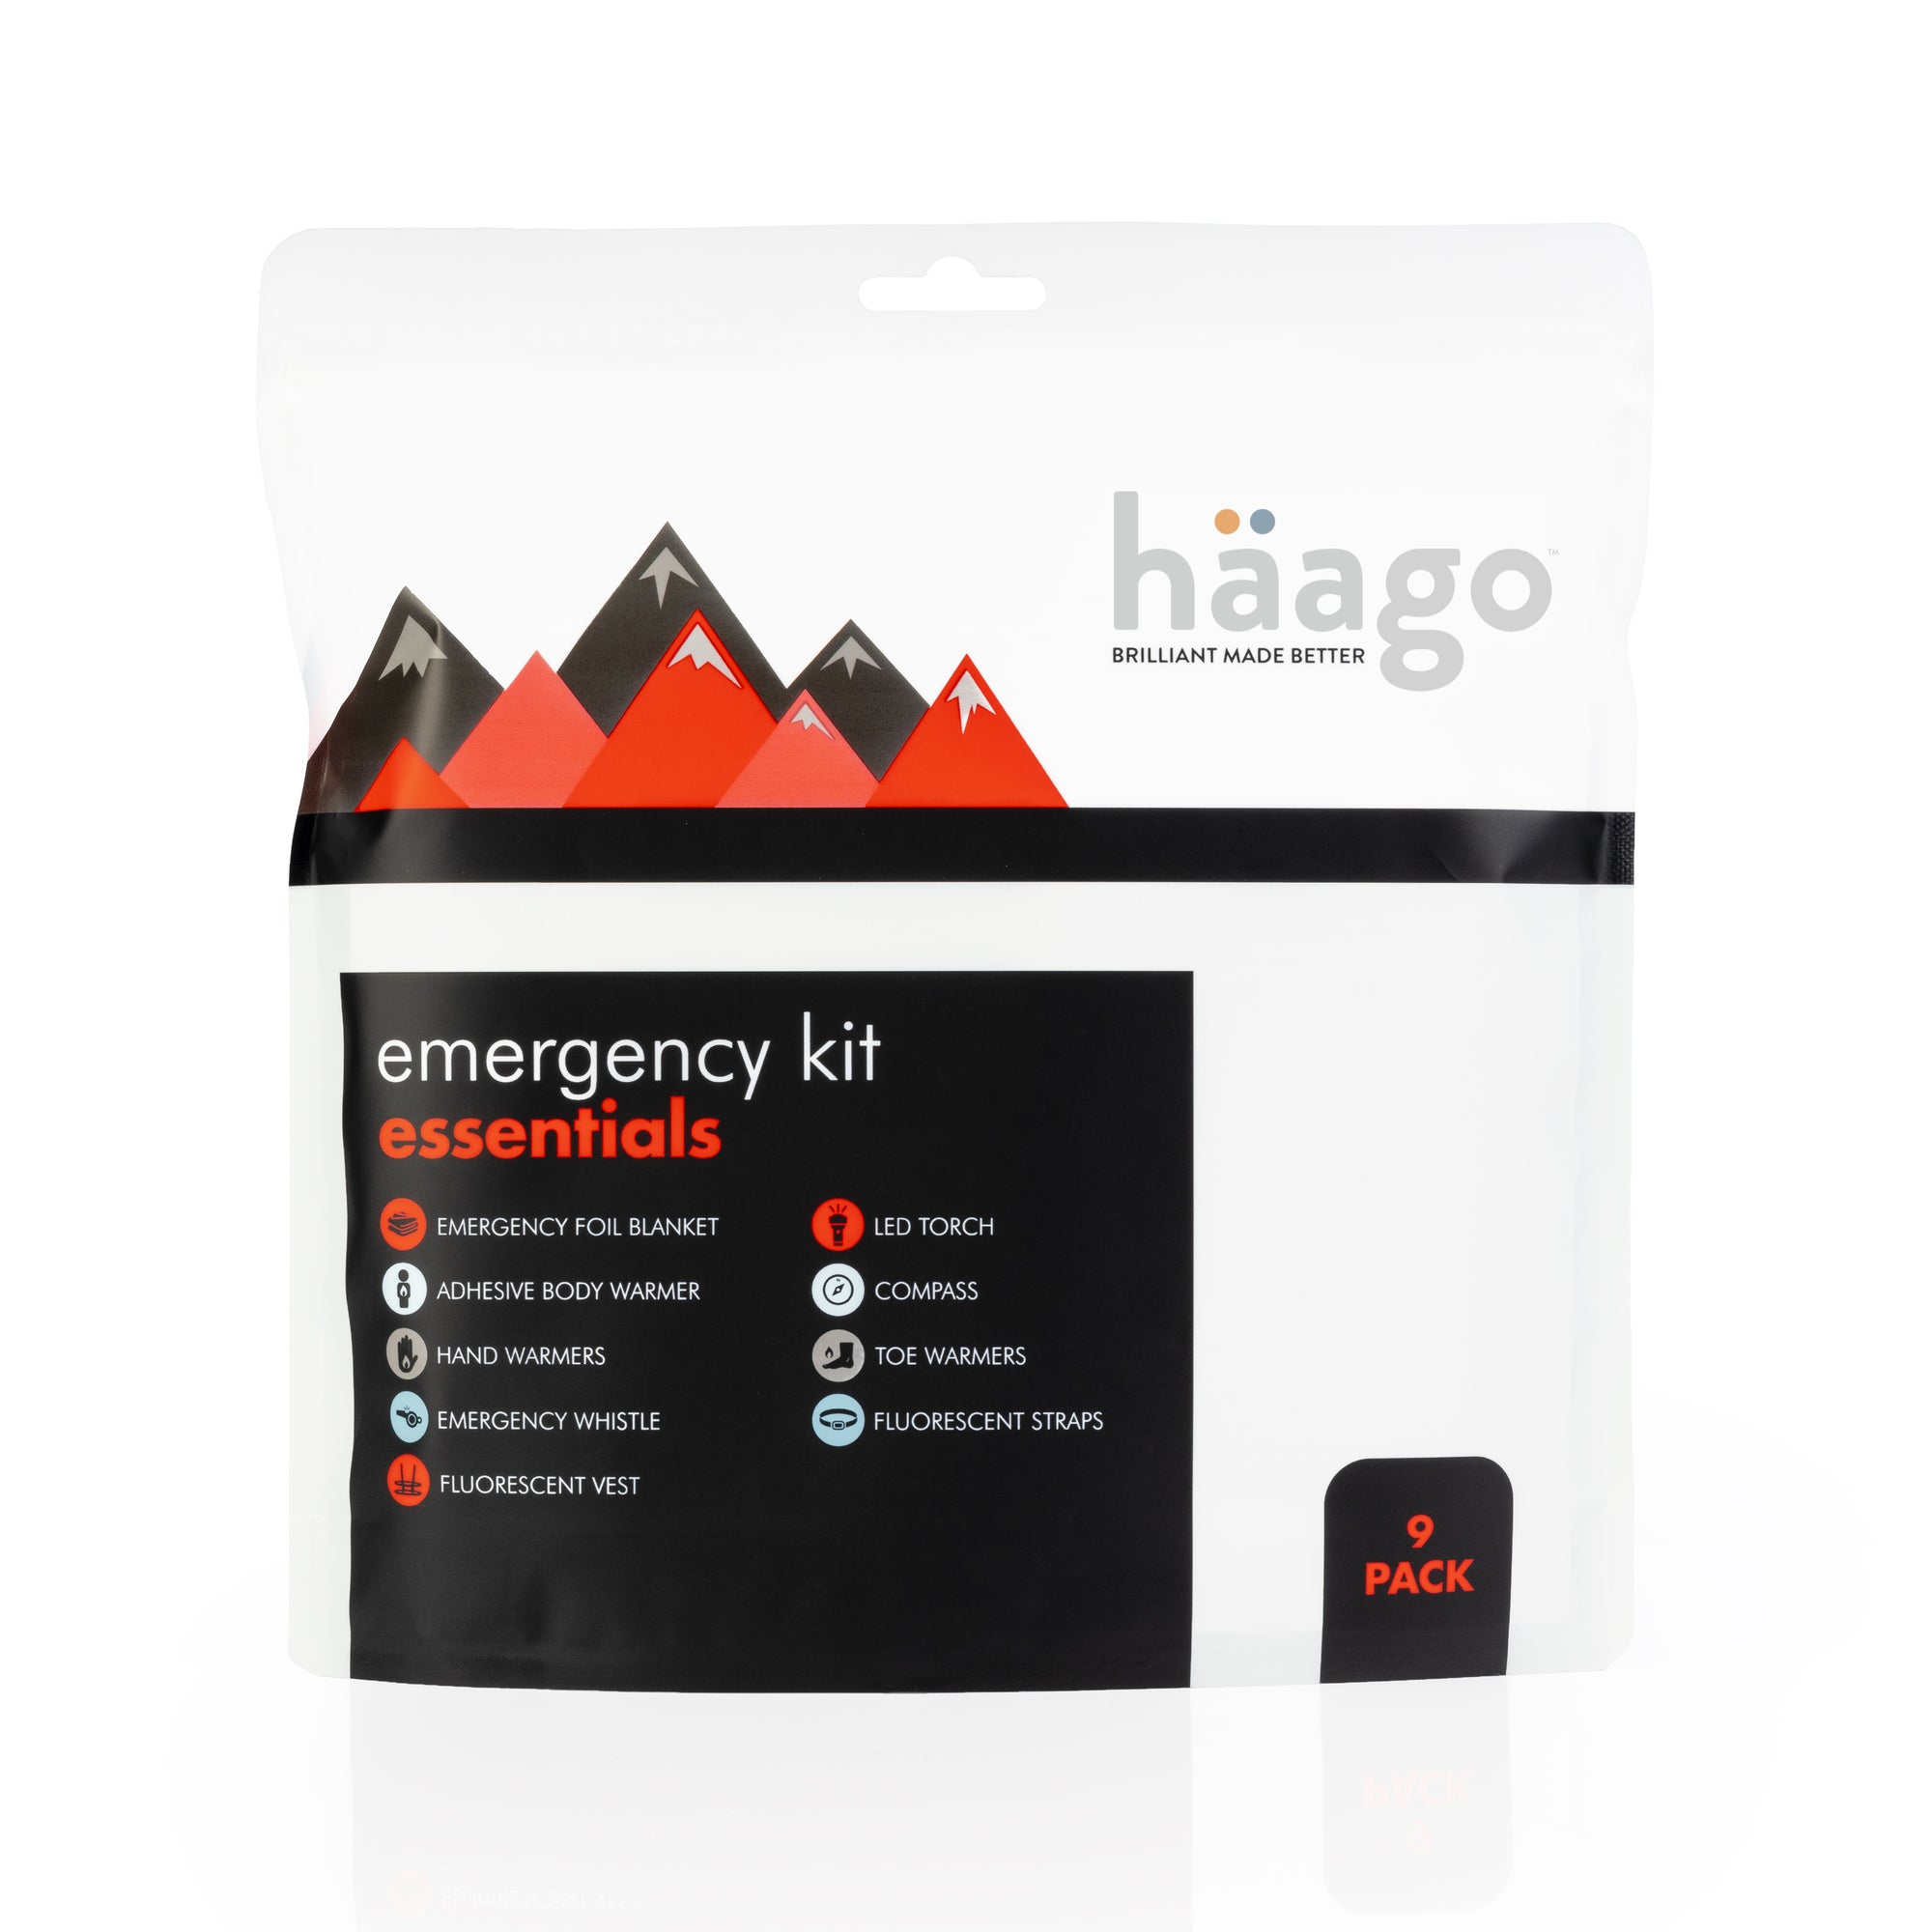 Emergency Essentials Kit